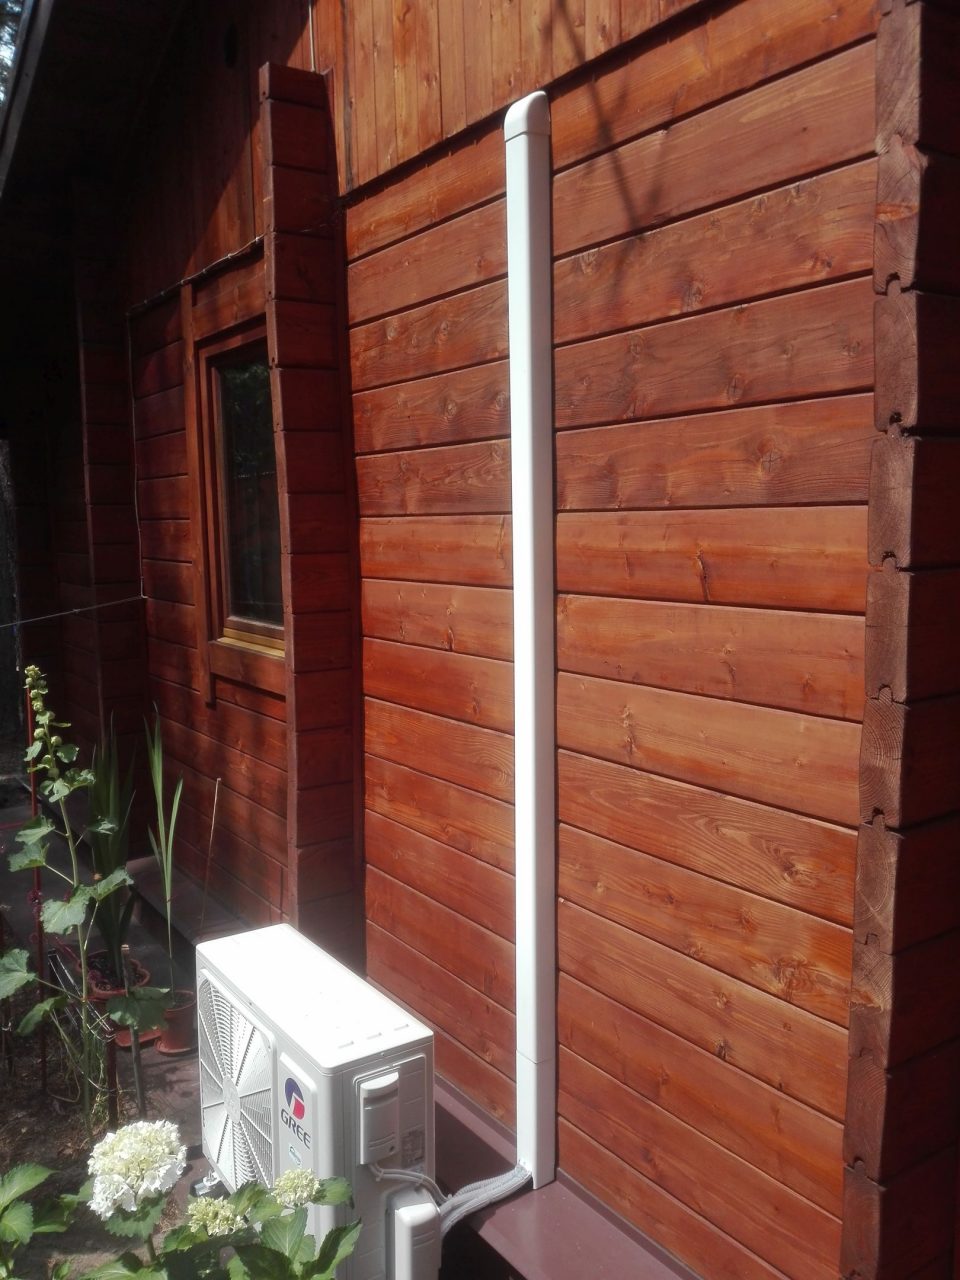 Instalacja klimatyzacji marki Gree do ogrzania niewielkiego domu Sokolniki Las